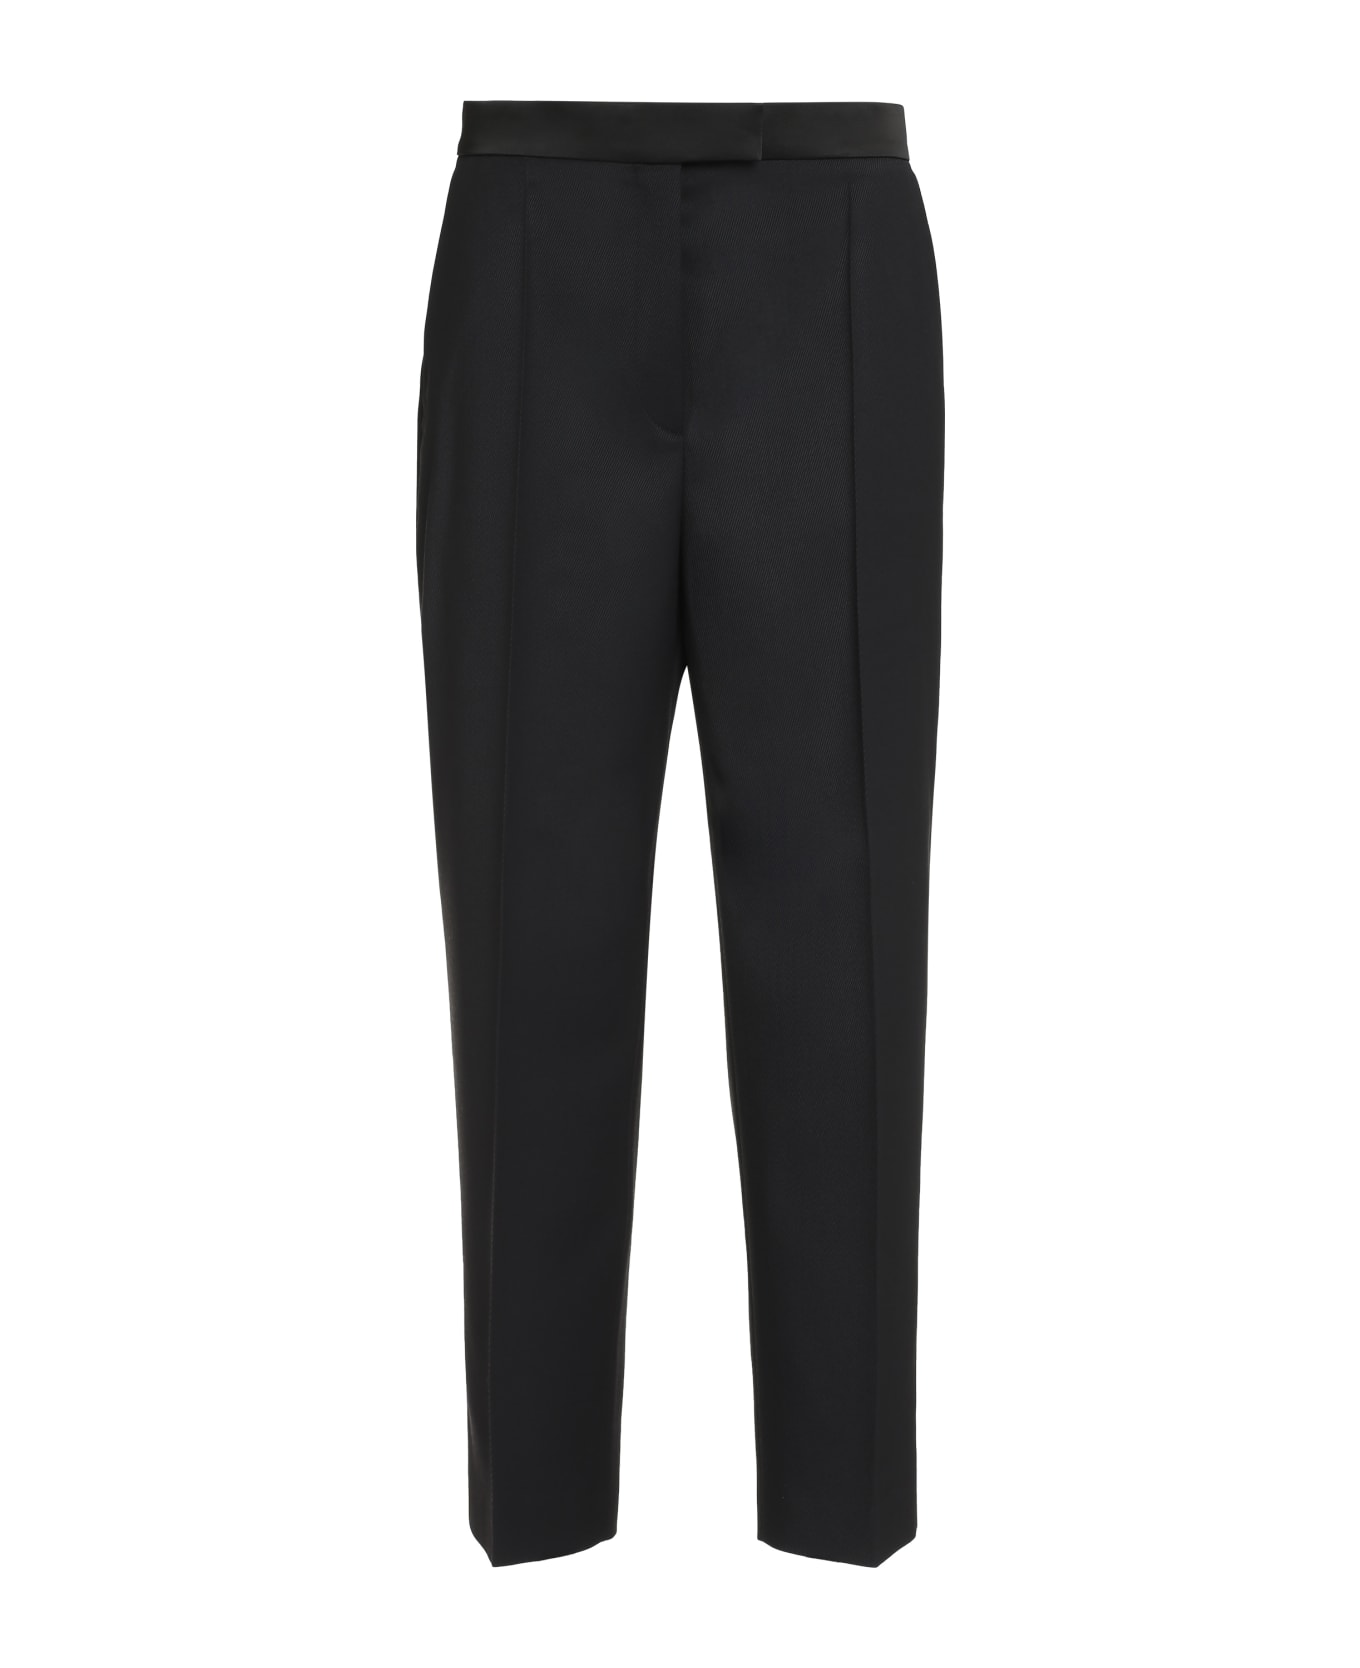 Hugo Boss Tatuxa Tailored Trousers - black ボトムス